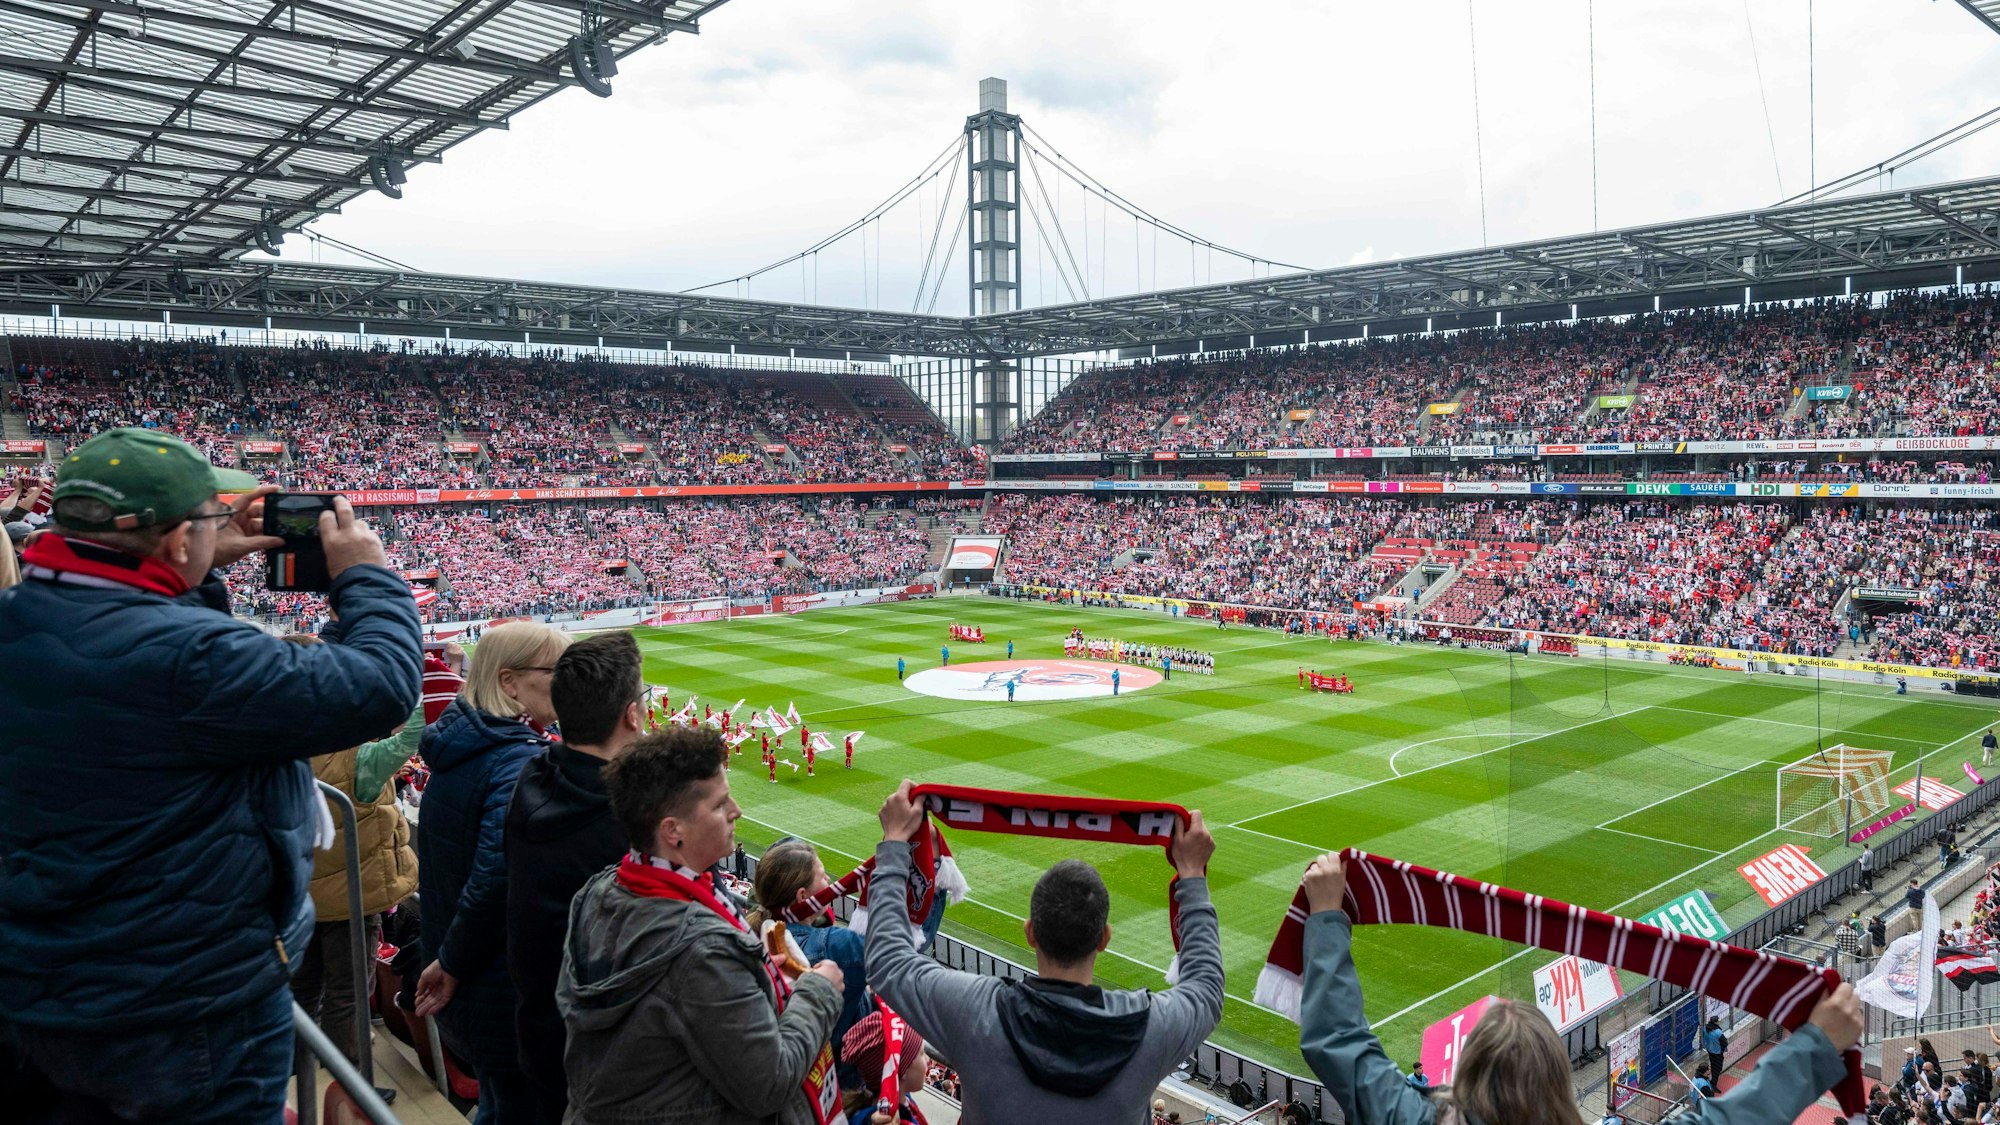 Knapp 35.000 Zuschauer sahen das Spiel der Frauen-Bundesliga zwischen dem 1. FC Köln und Eintracht Frankfurt.